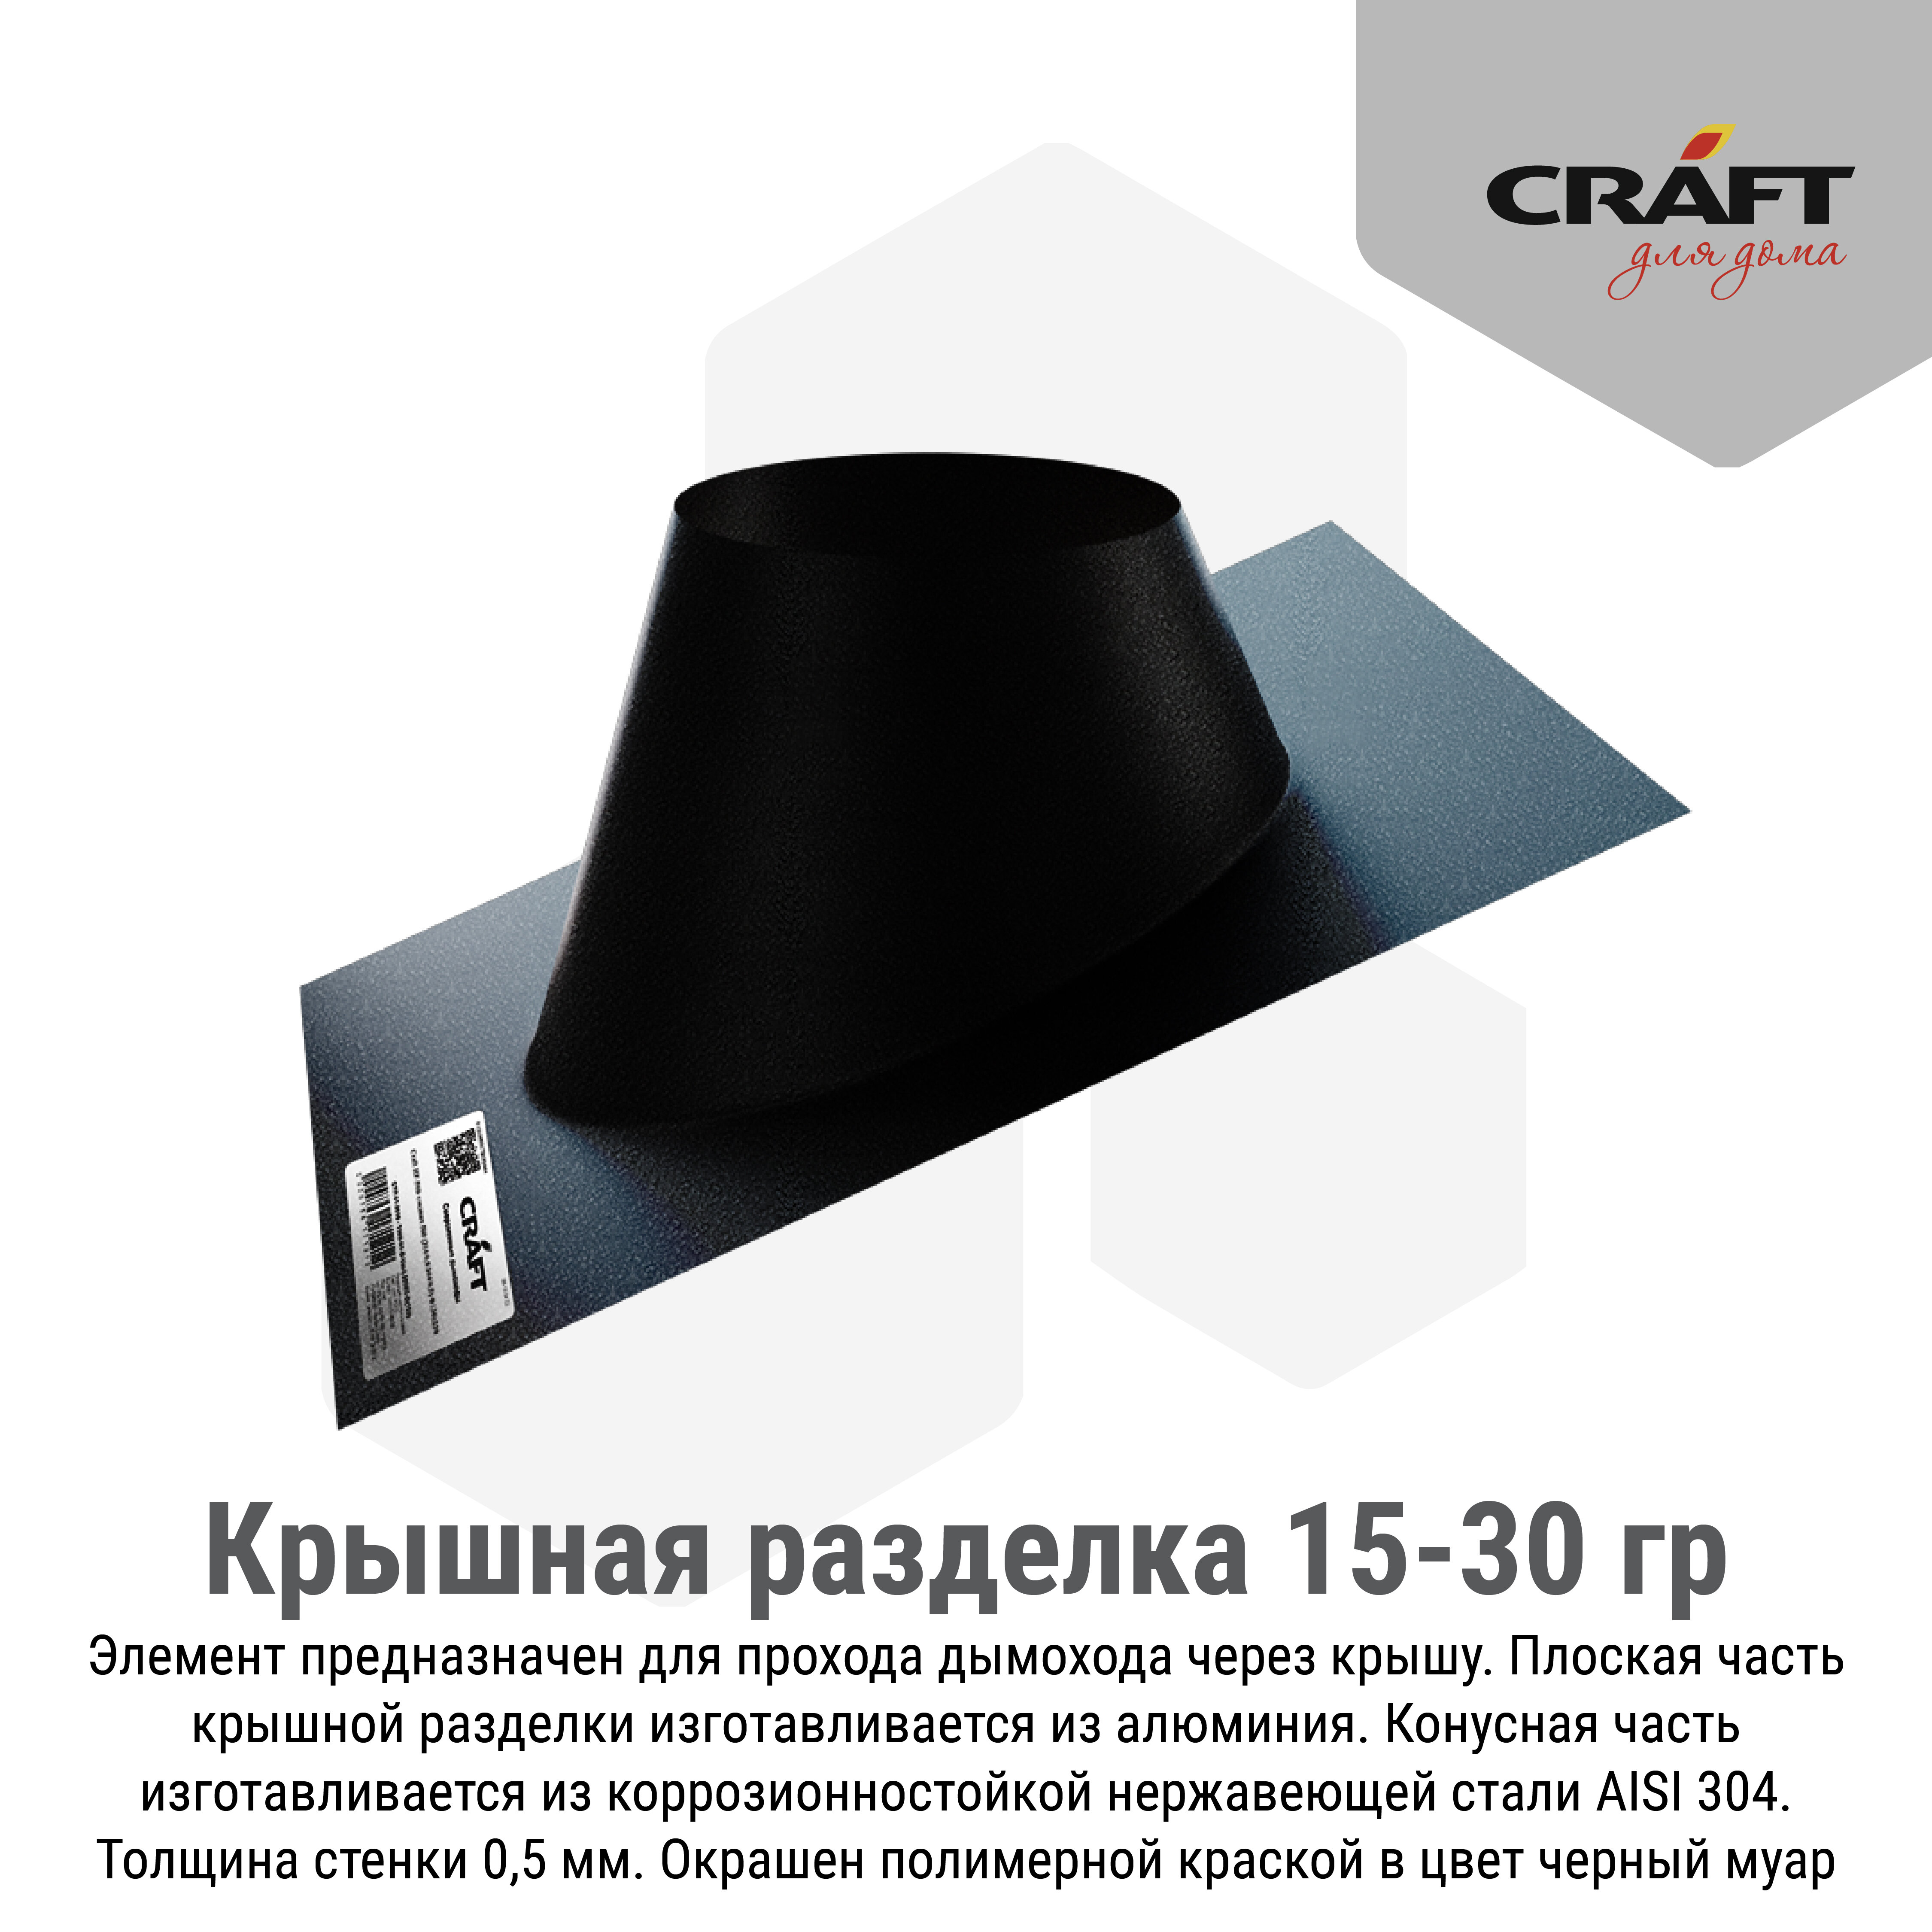 Craft HF-M крышная разделка 15-30гр. (алюминий/"Черный муар") Ф250 - фотография № 2